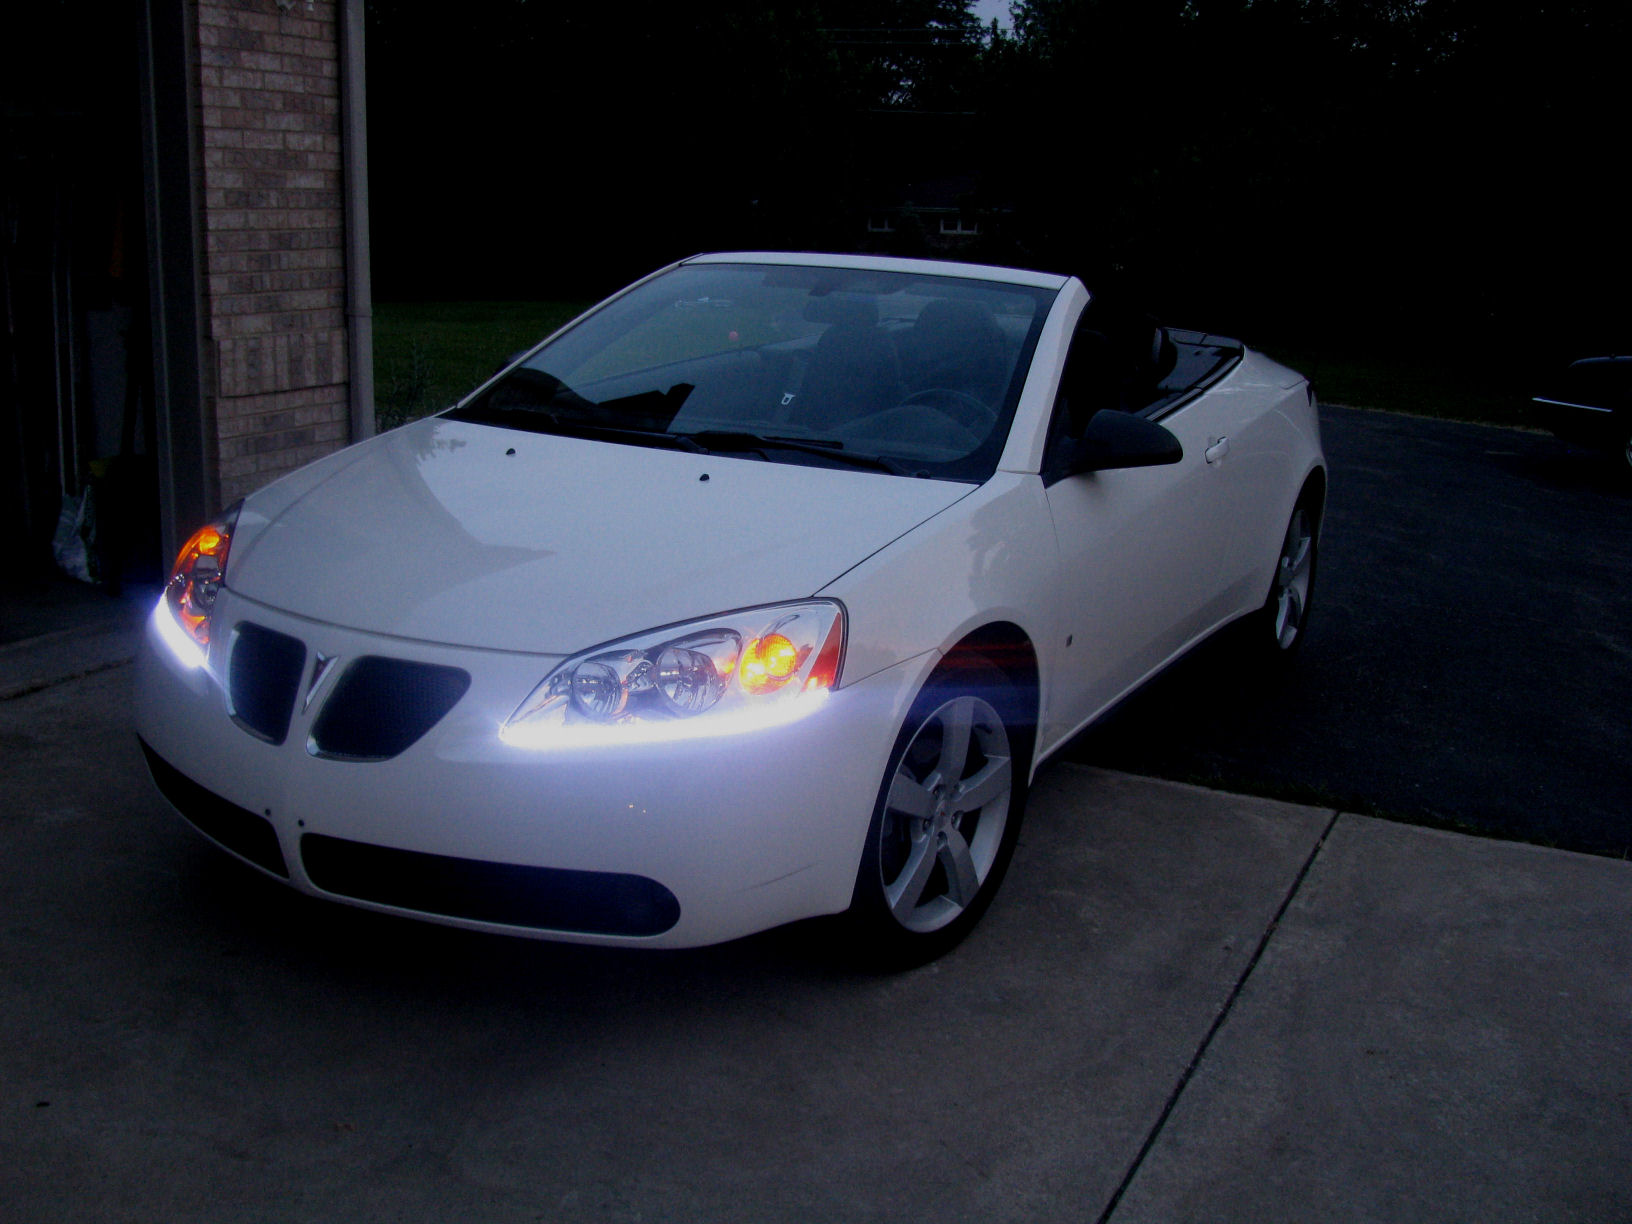 14 pcs LED White Lights Interior Package Kit For Pontiac G6 2005-2010